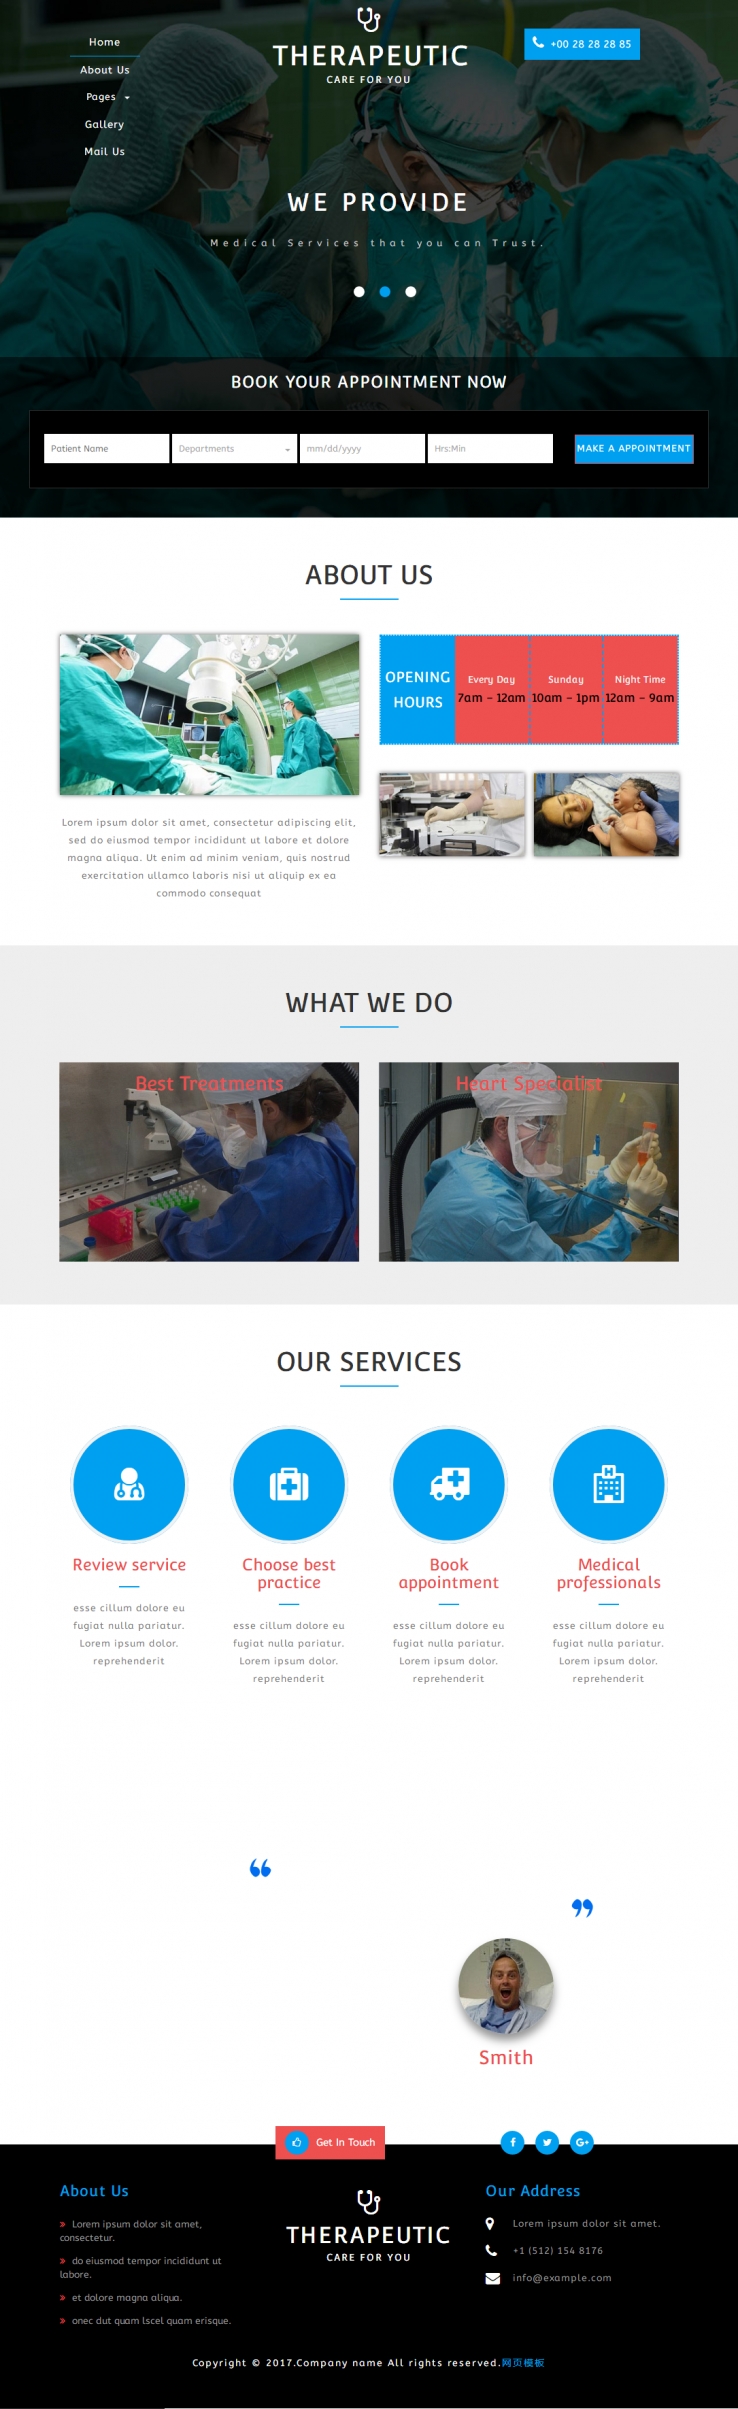 蓝色大气风格的医学医疗网站模板下载